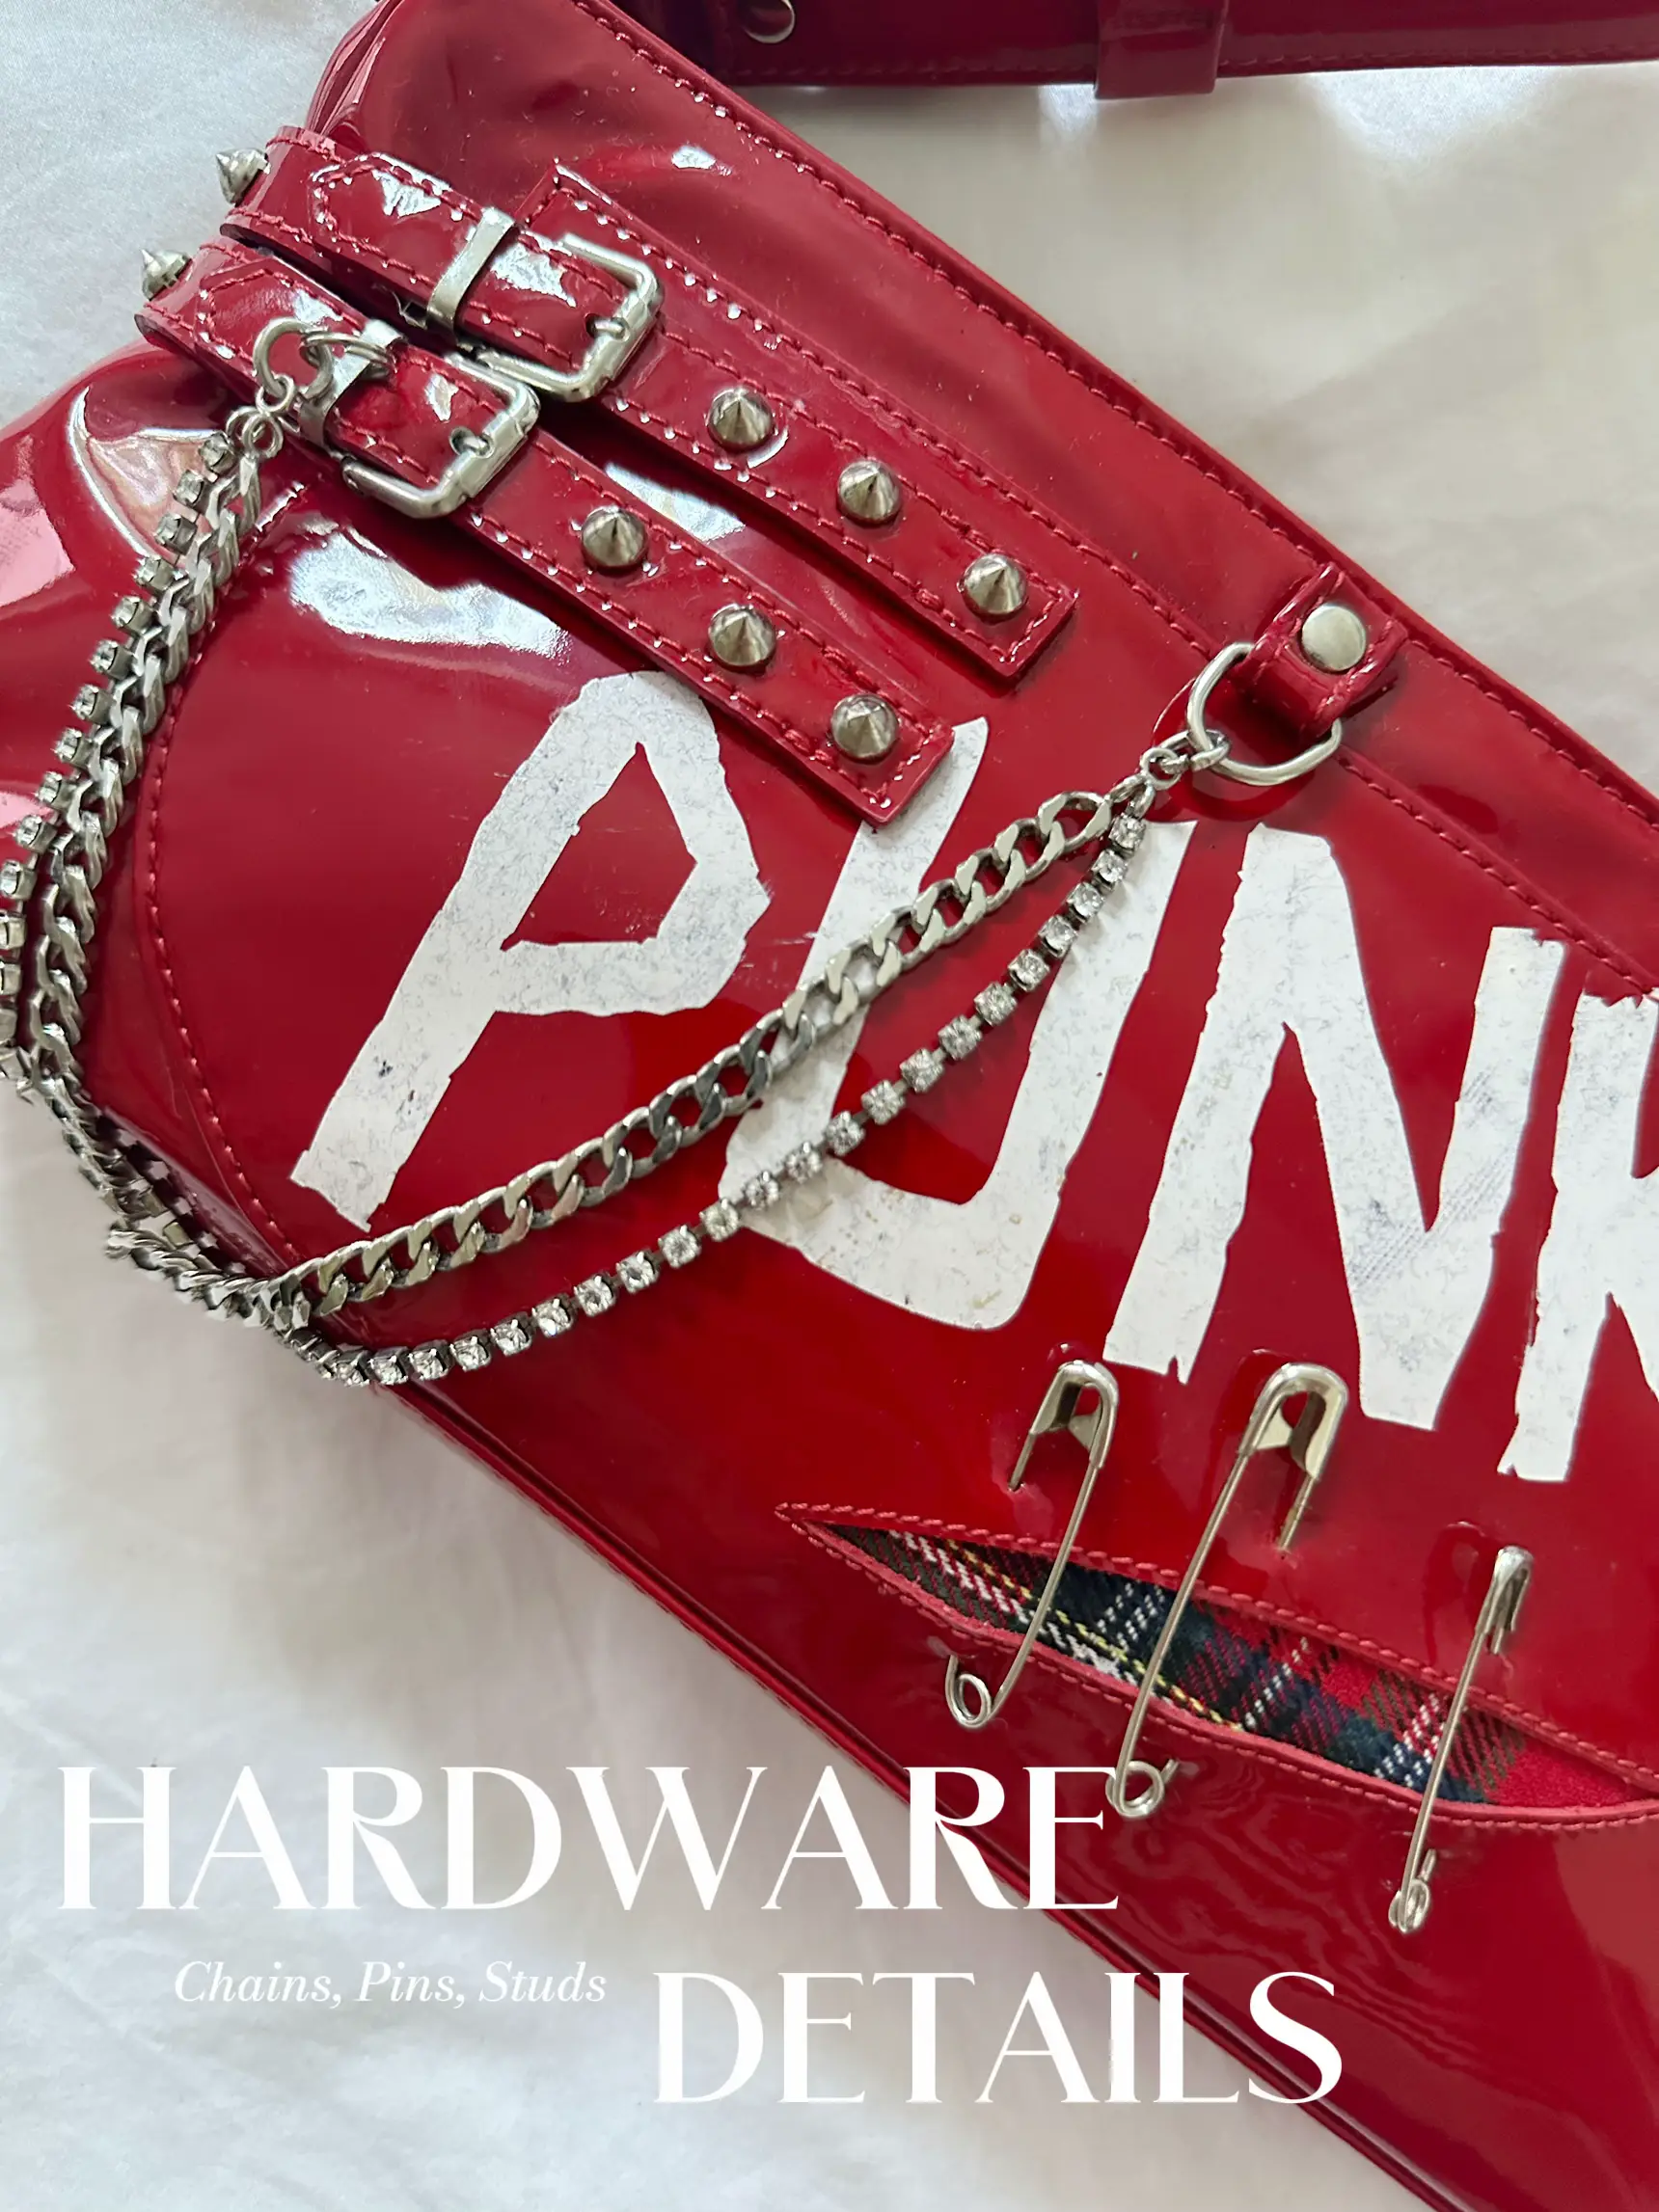 Vintage Victoria Secret Pink Handbag, Details